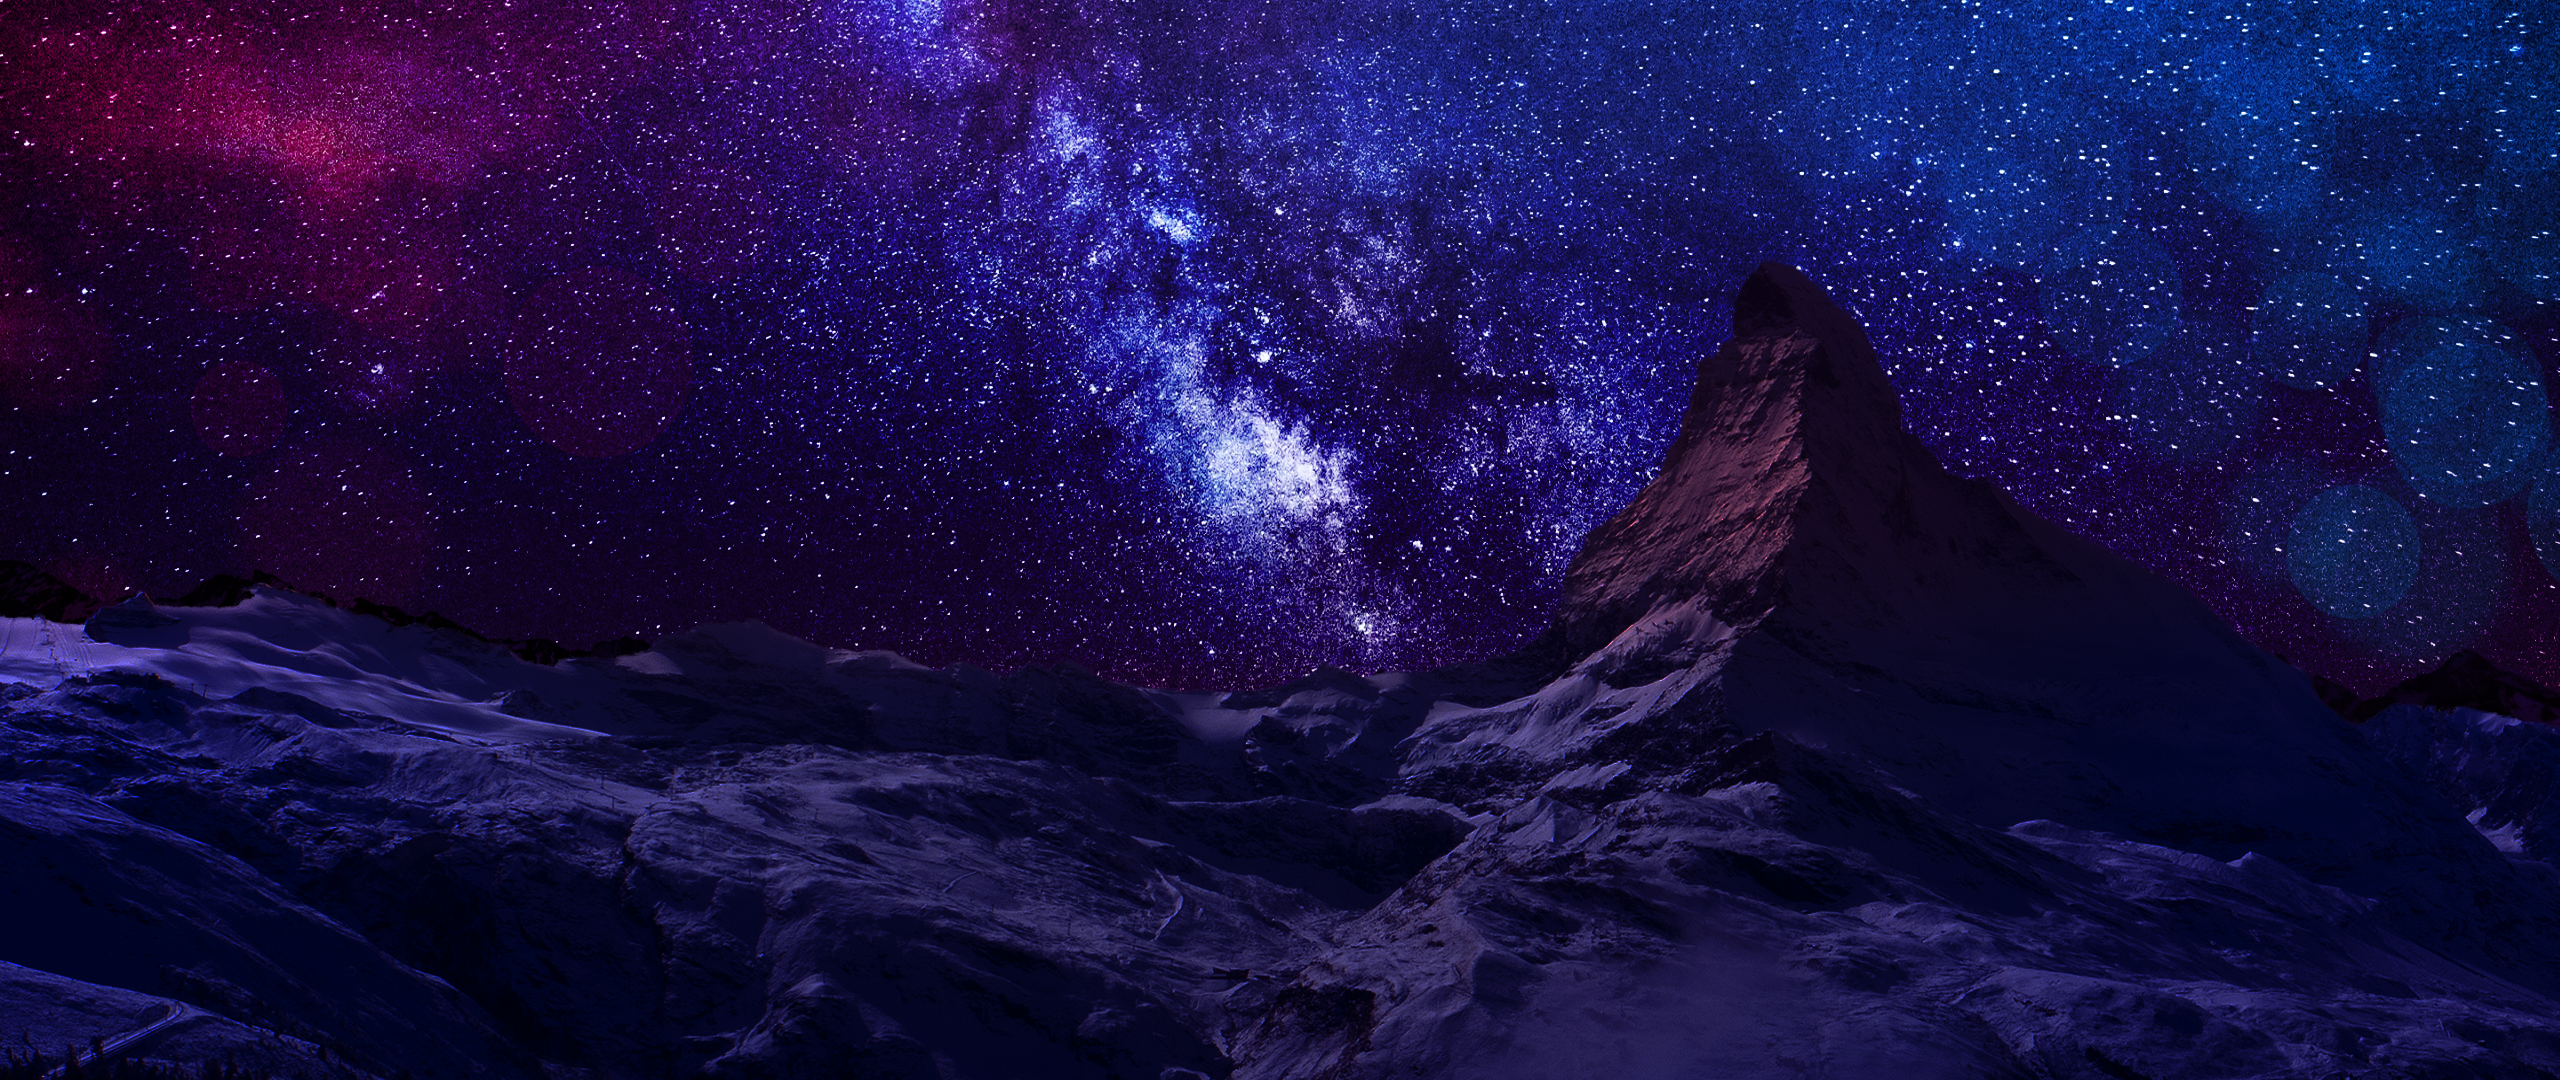 General 2560x1080 mountains Matterhorn Milky Way